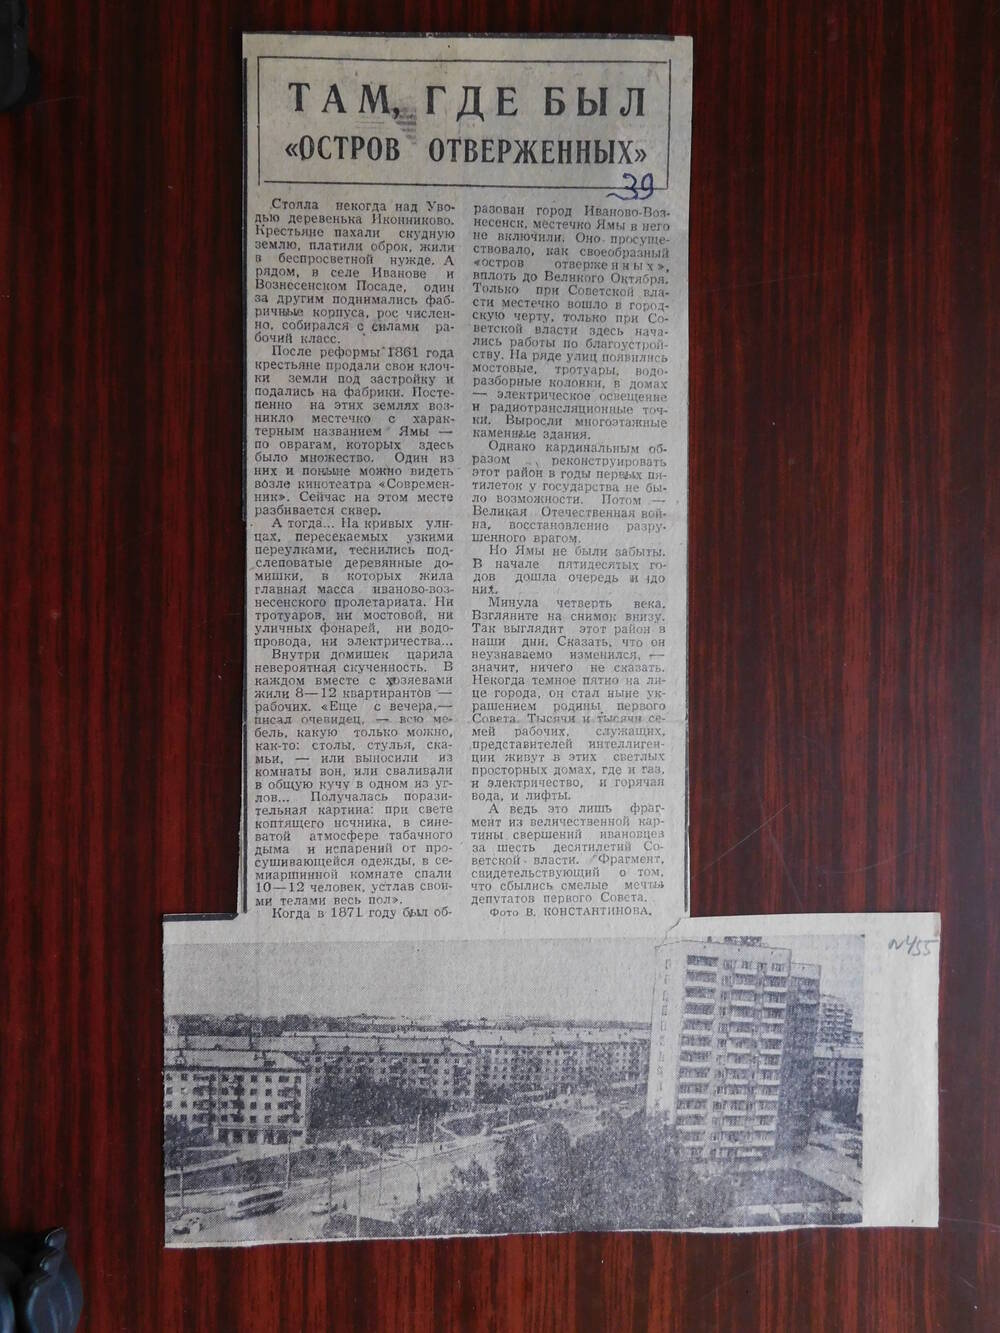 Фрагмент газеты Рабочий край от 19.06.1977 г. Ст. Там, где был остров отверженных. Иваново.